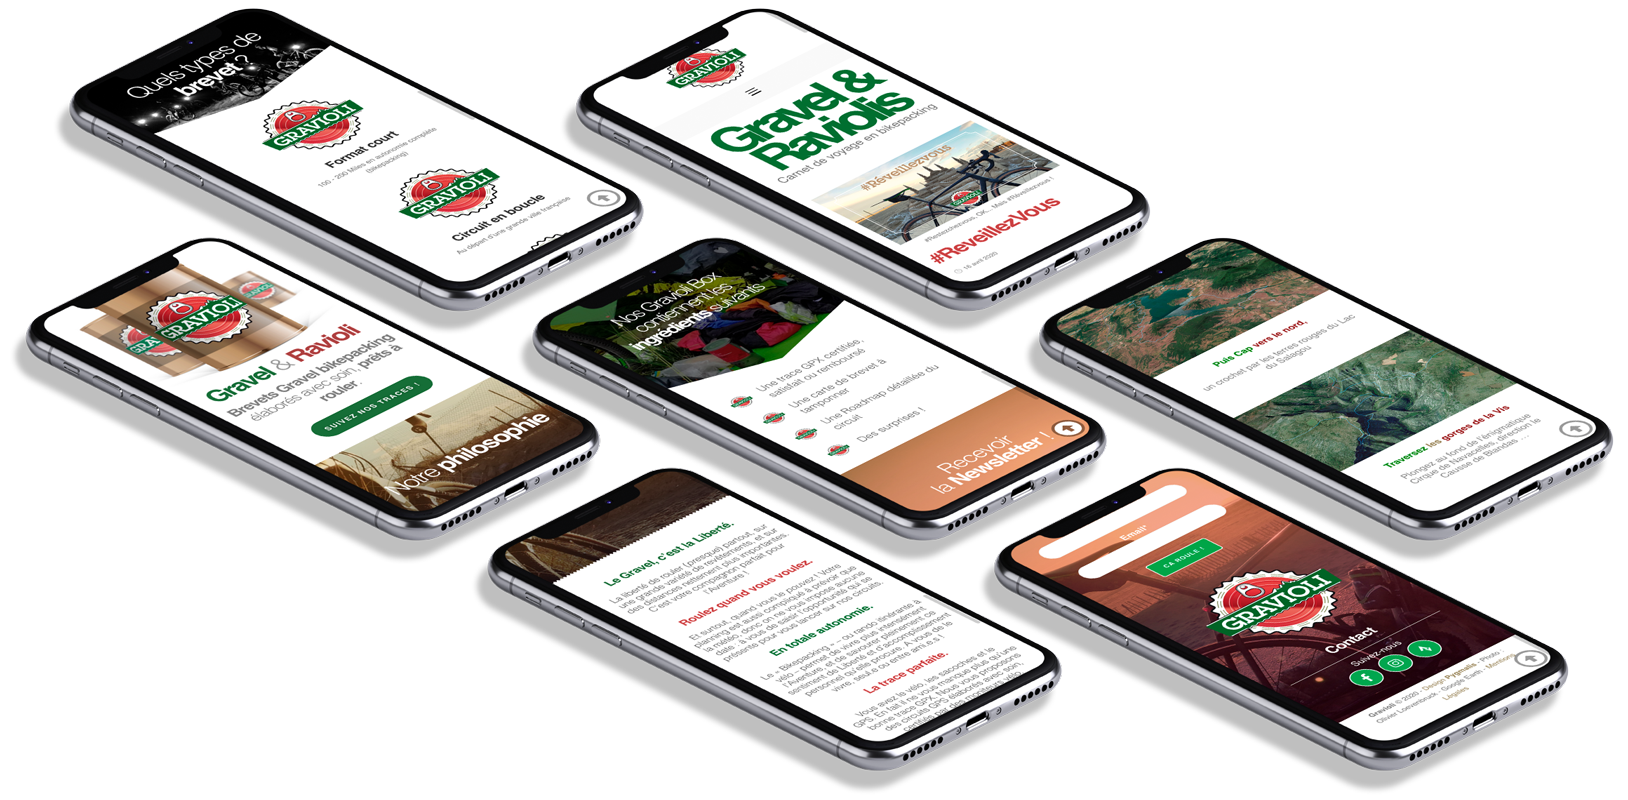 webdesign mobile avec le CMS wordpress pour un guide gravel entre tourisme et sport en nature